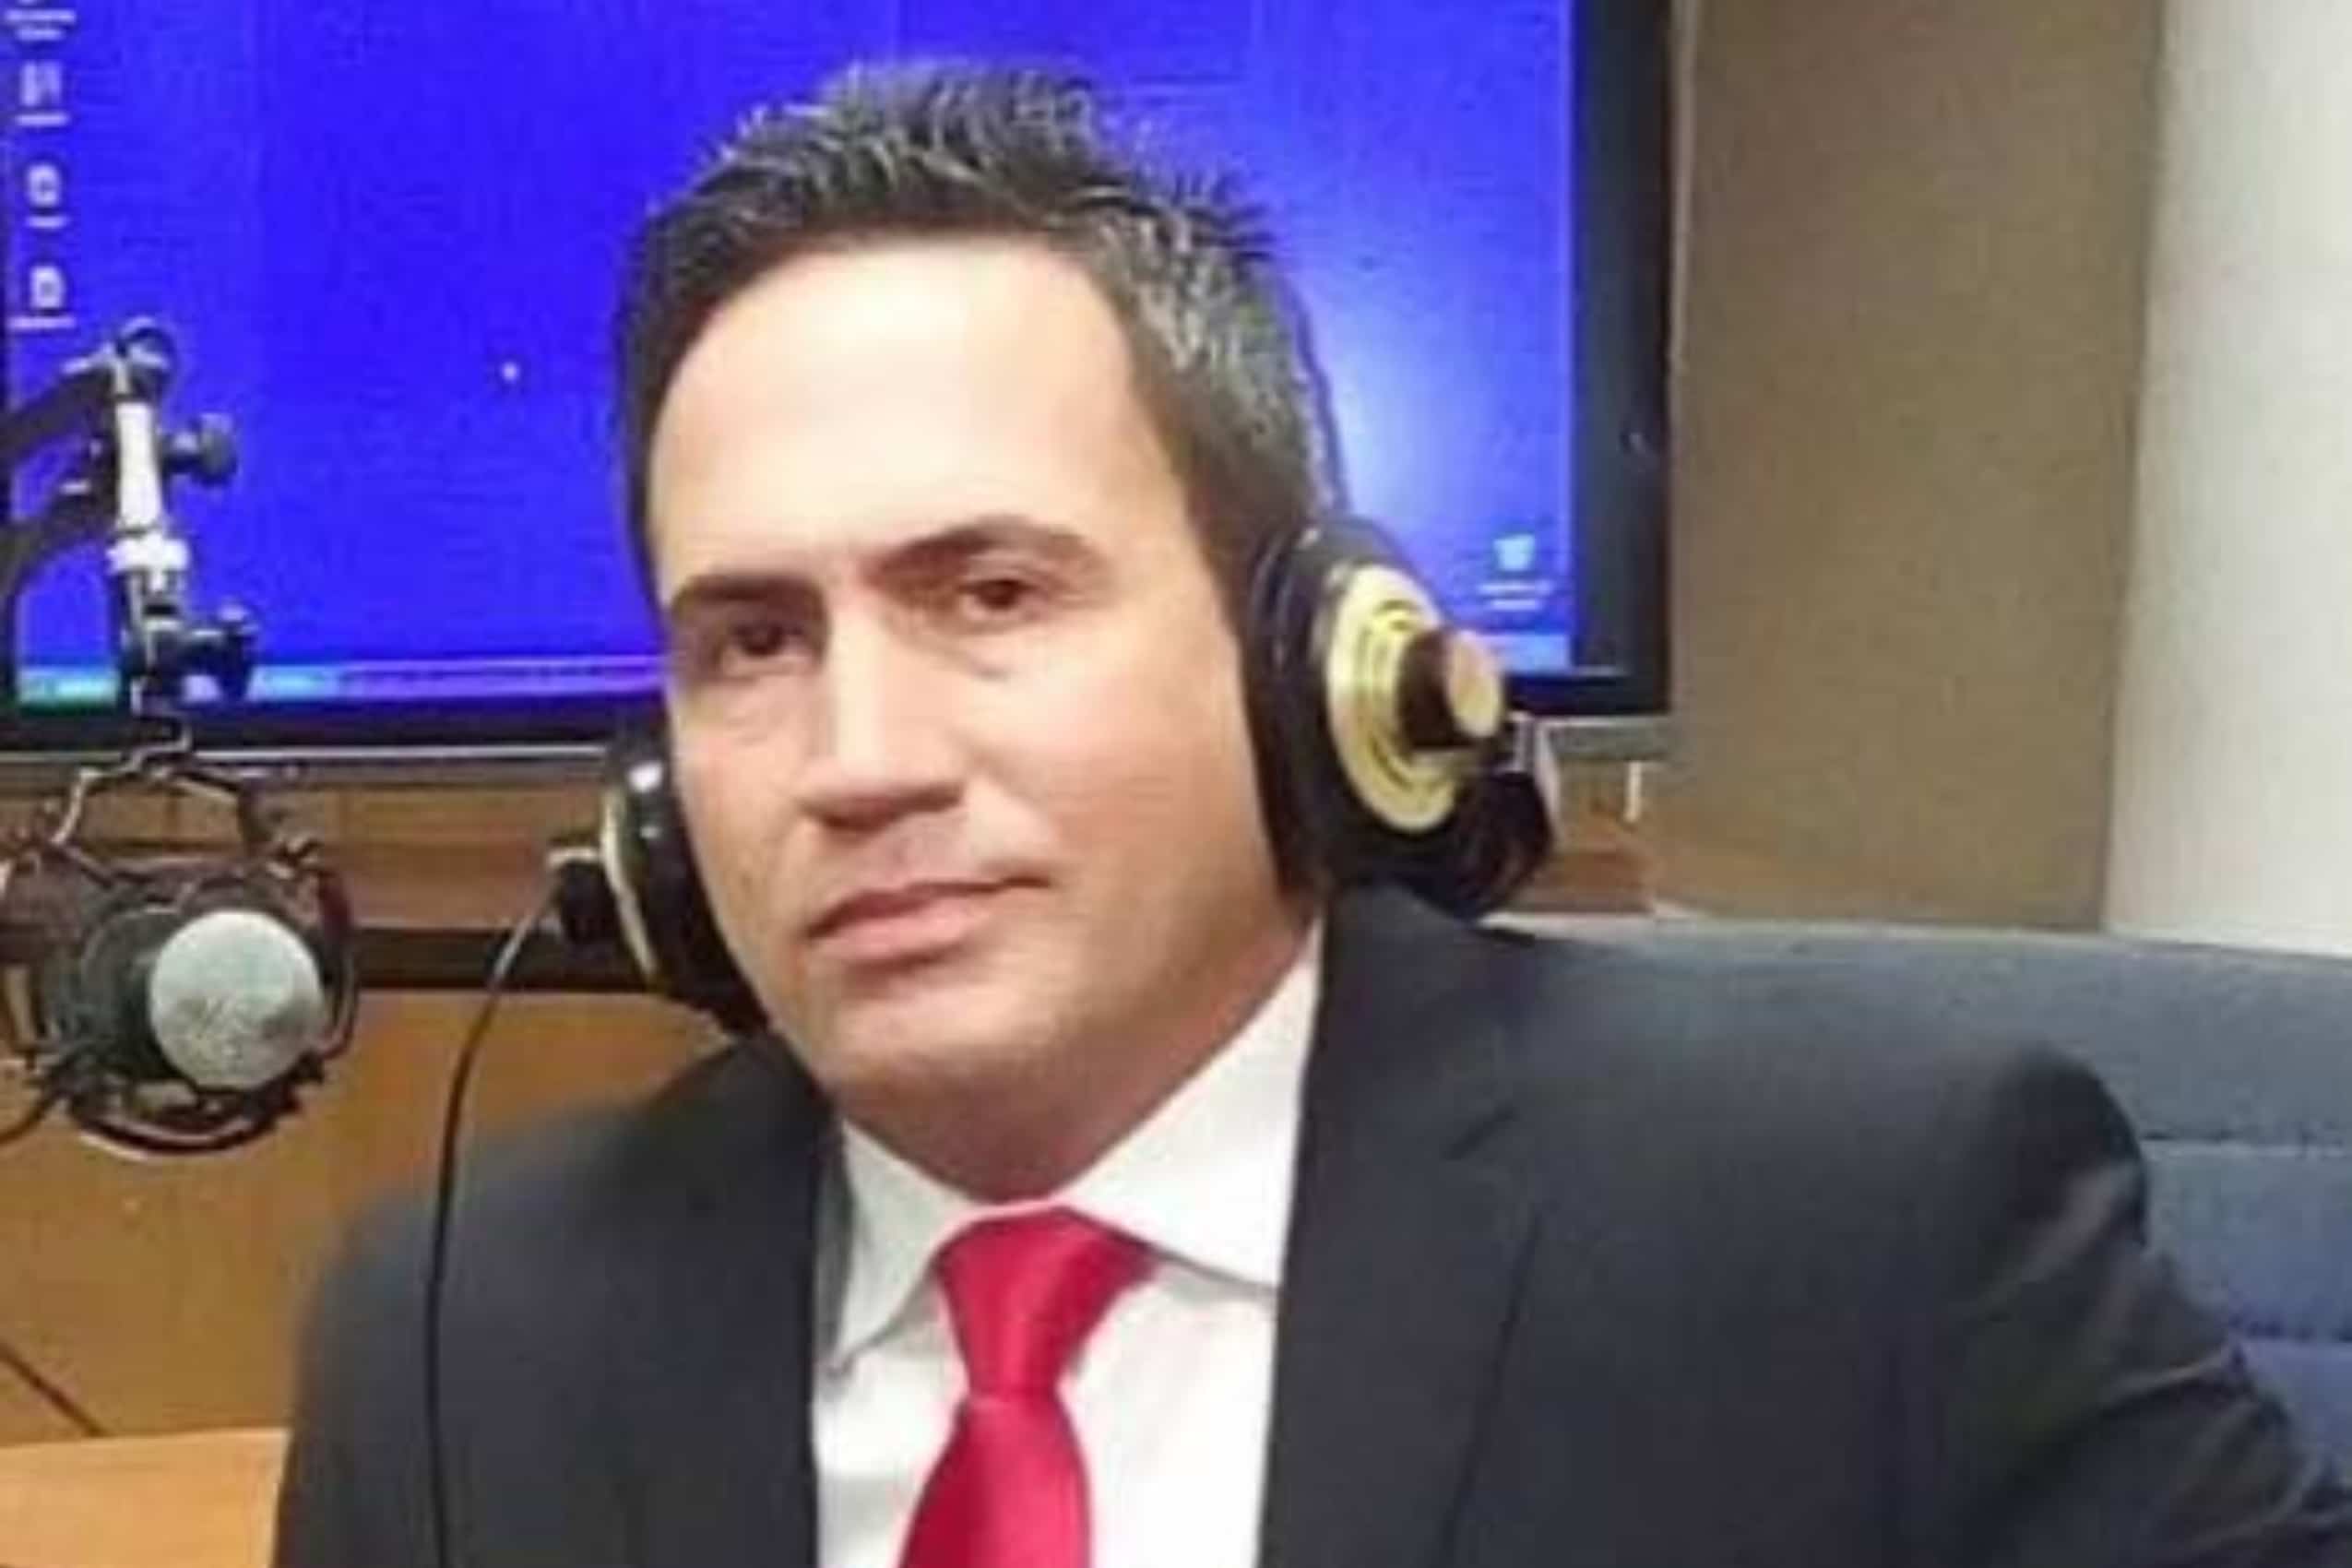 Censuran en programas de corte político al locutor cubano Yunior Morales por criticar al régimen de la isla.